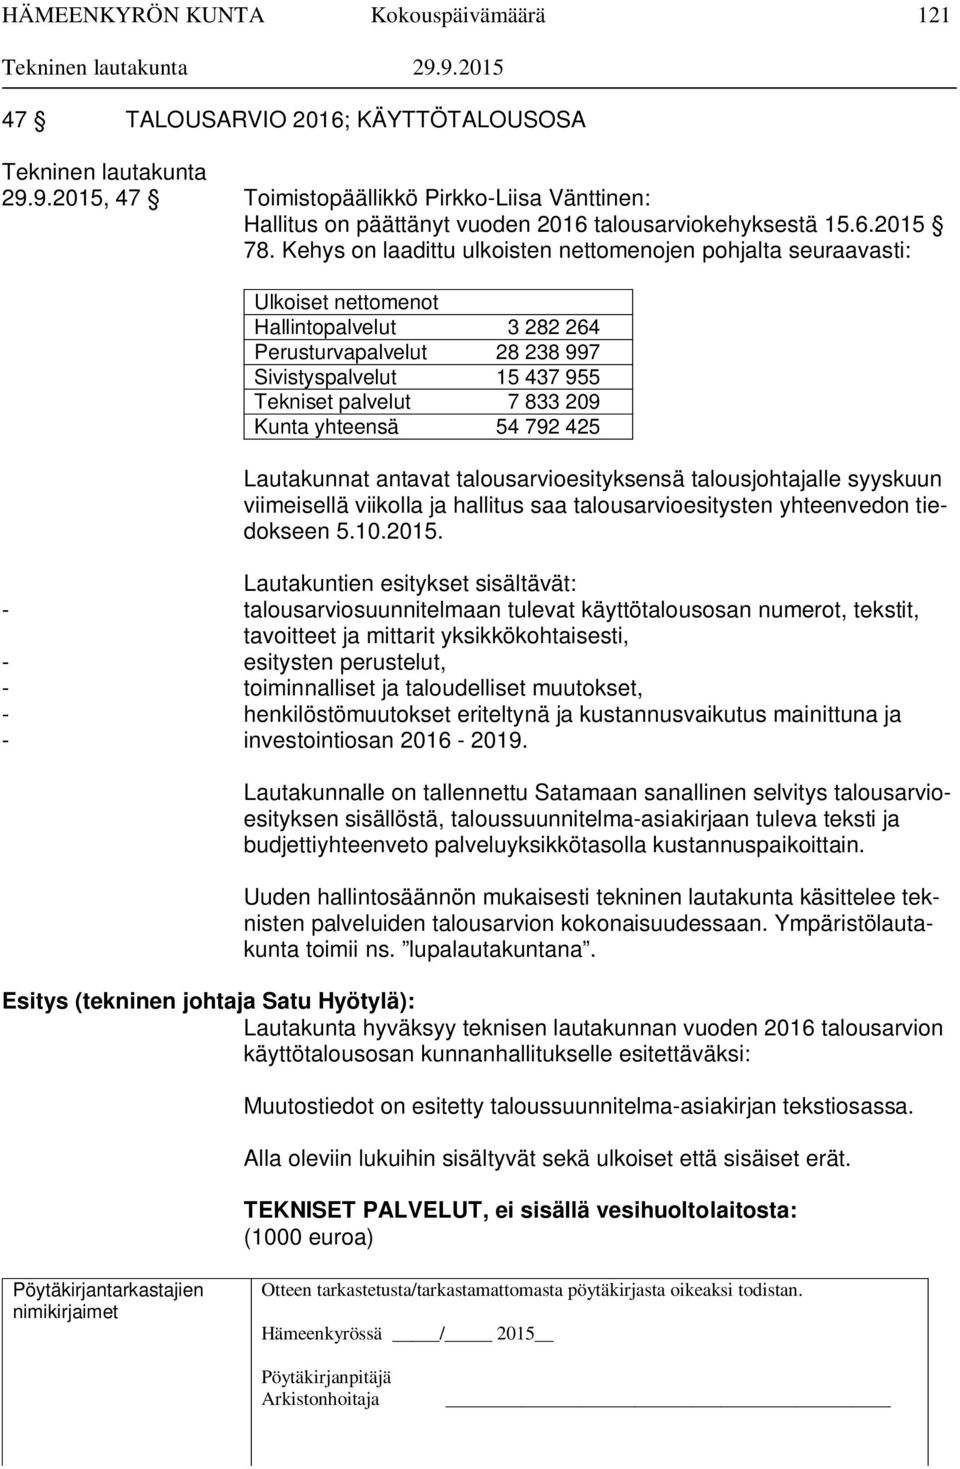 Kunta yhteensä 54 792 425 Lautakunnat antavat talousarvioesityksensä talousjohtajalle syyskuun viimeisellä viikolla ja hallitus saa talousarvioesitysten yhteenvedon tiedokseen 5.10.2015.